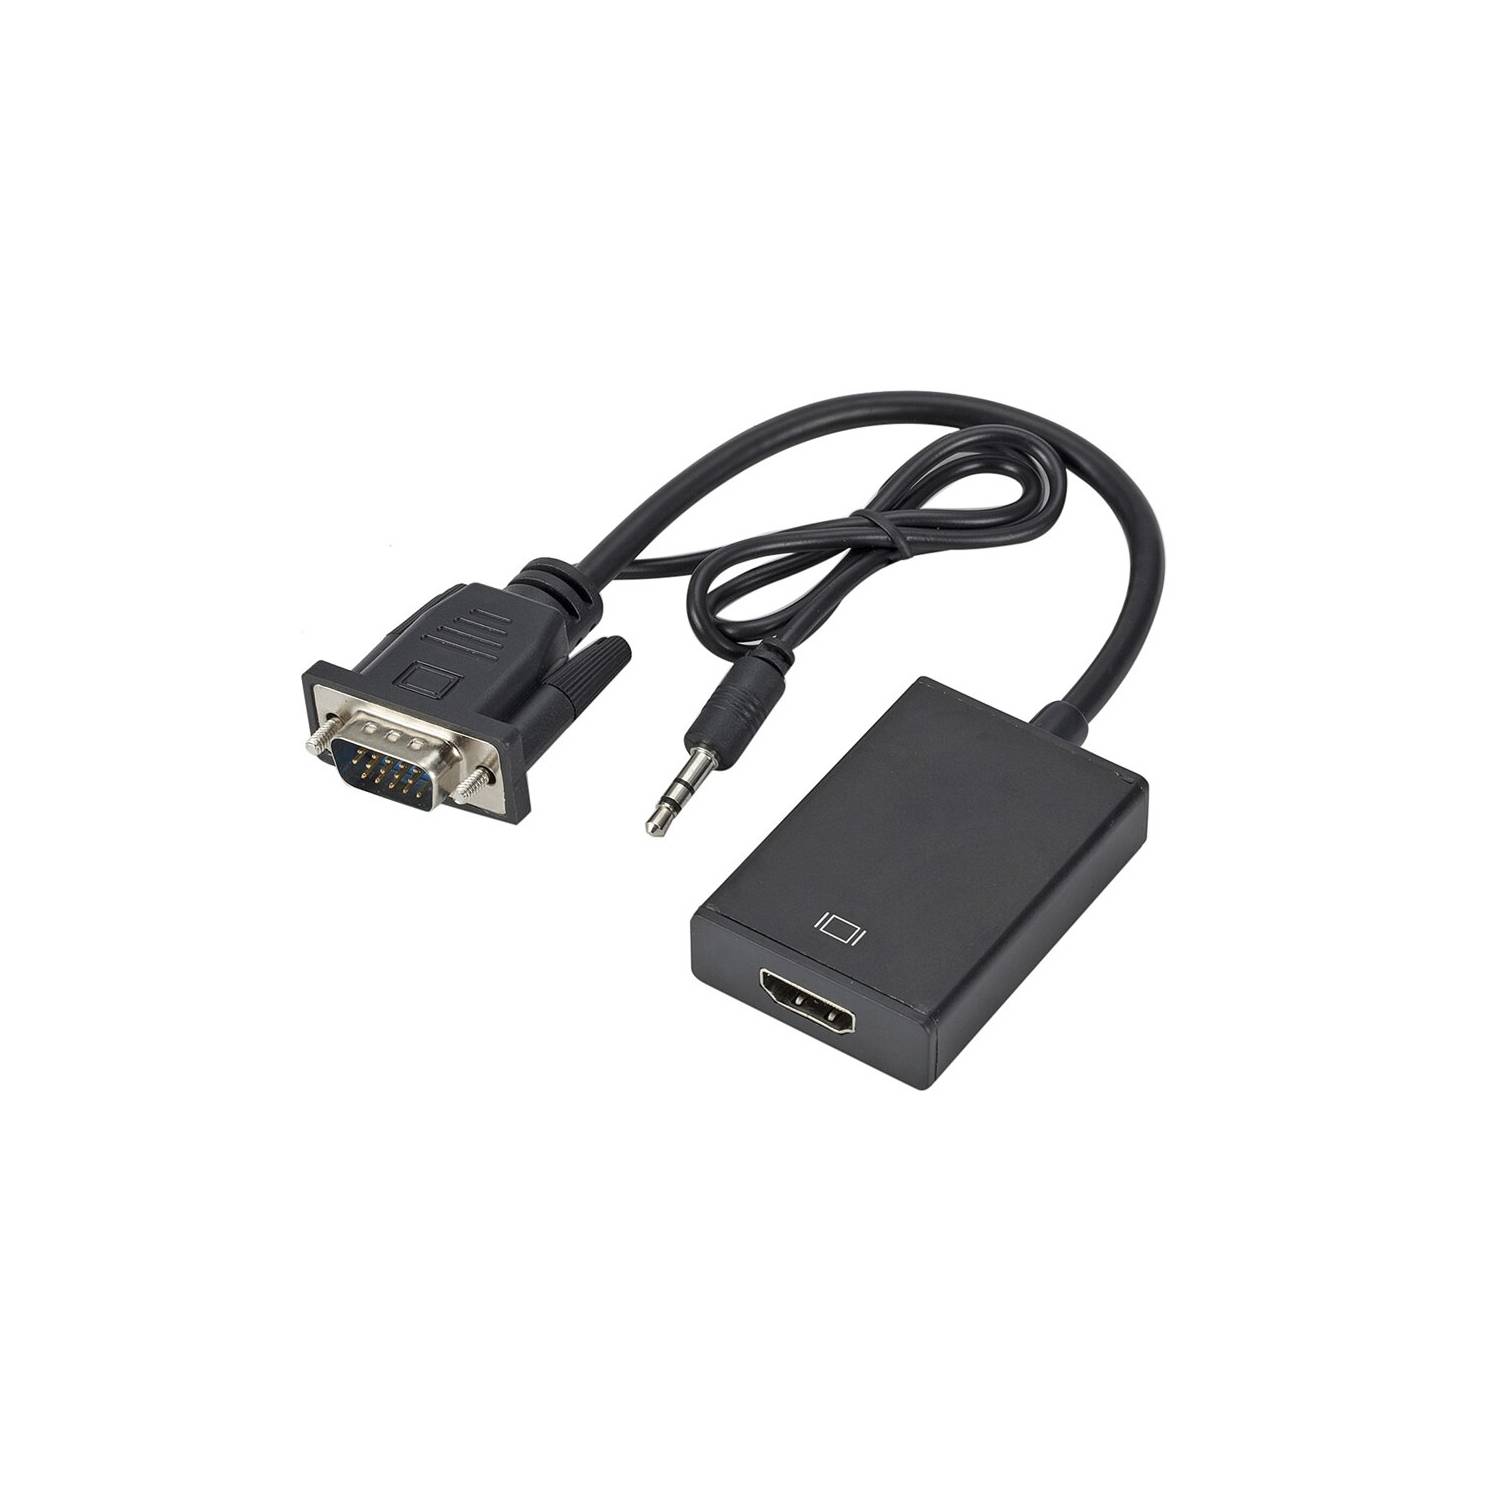 Cable y adaptadores de audio y vídeo HDMI de 1 HDMI macho a 1 HDMI macho  Tblack Cabo Hdmi 2 Metros hdmi de 2m